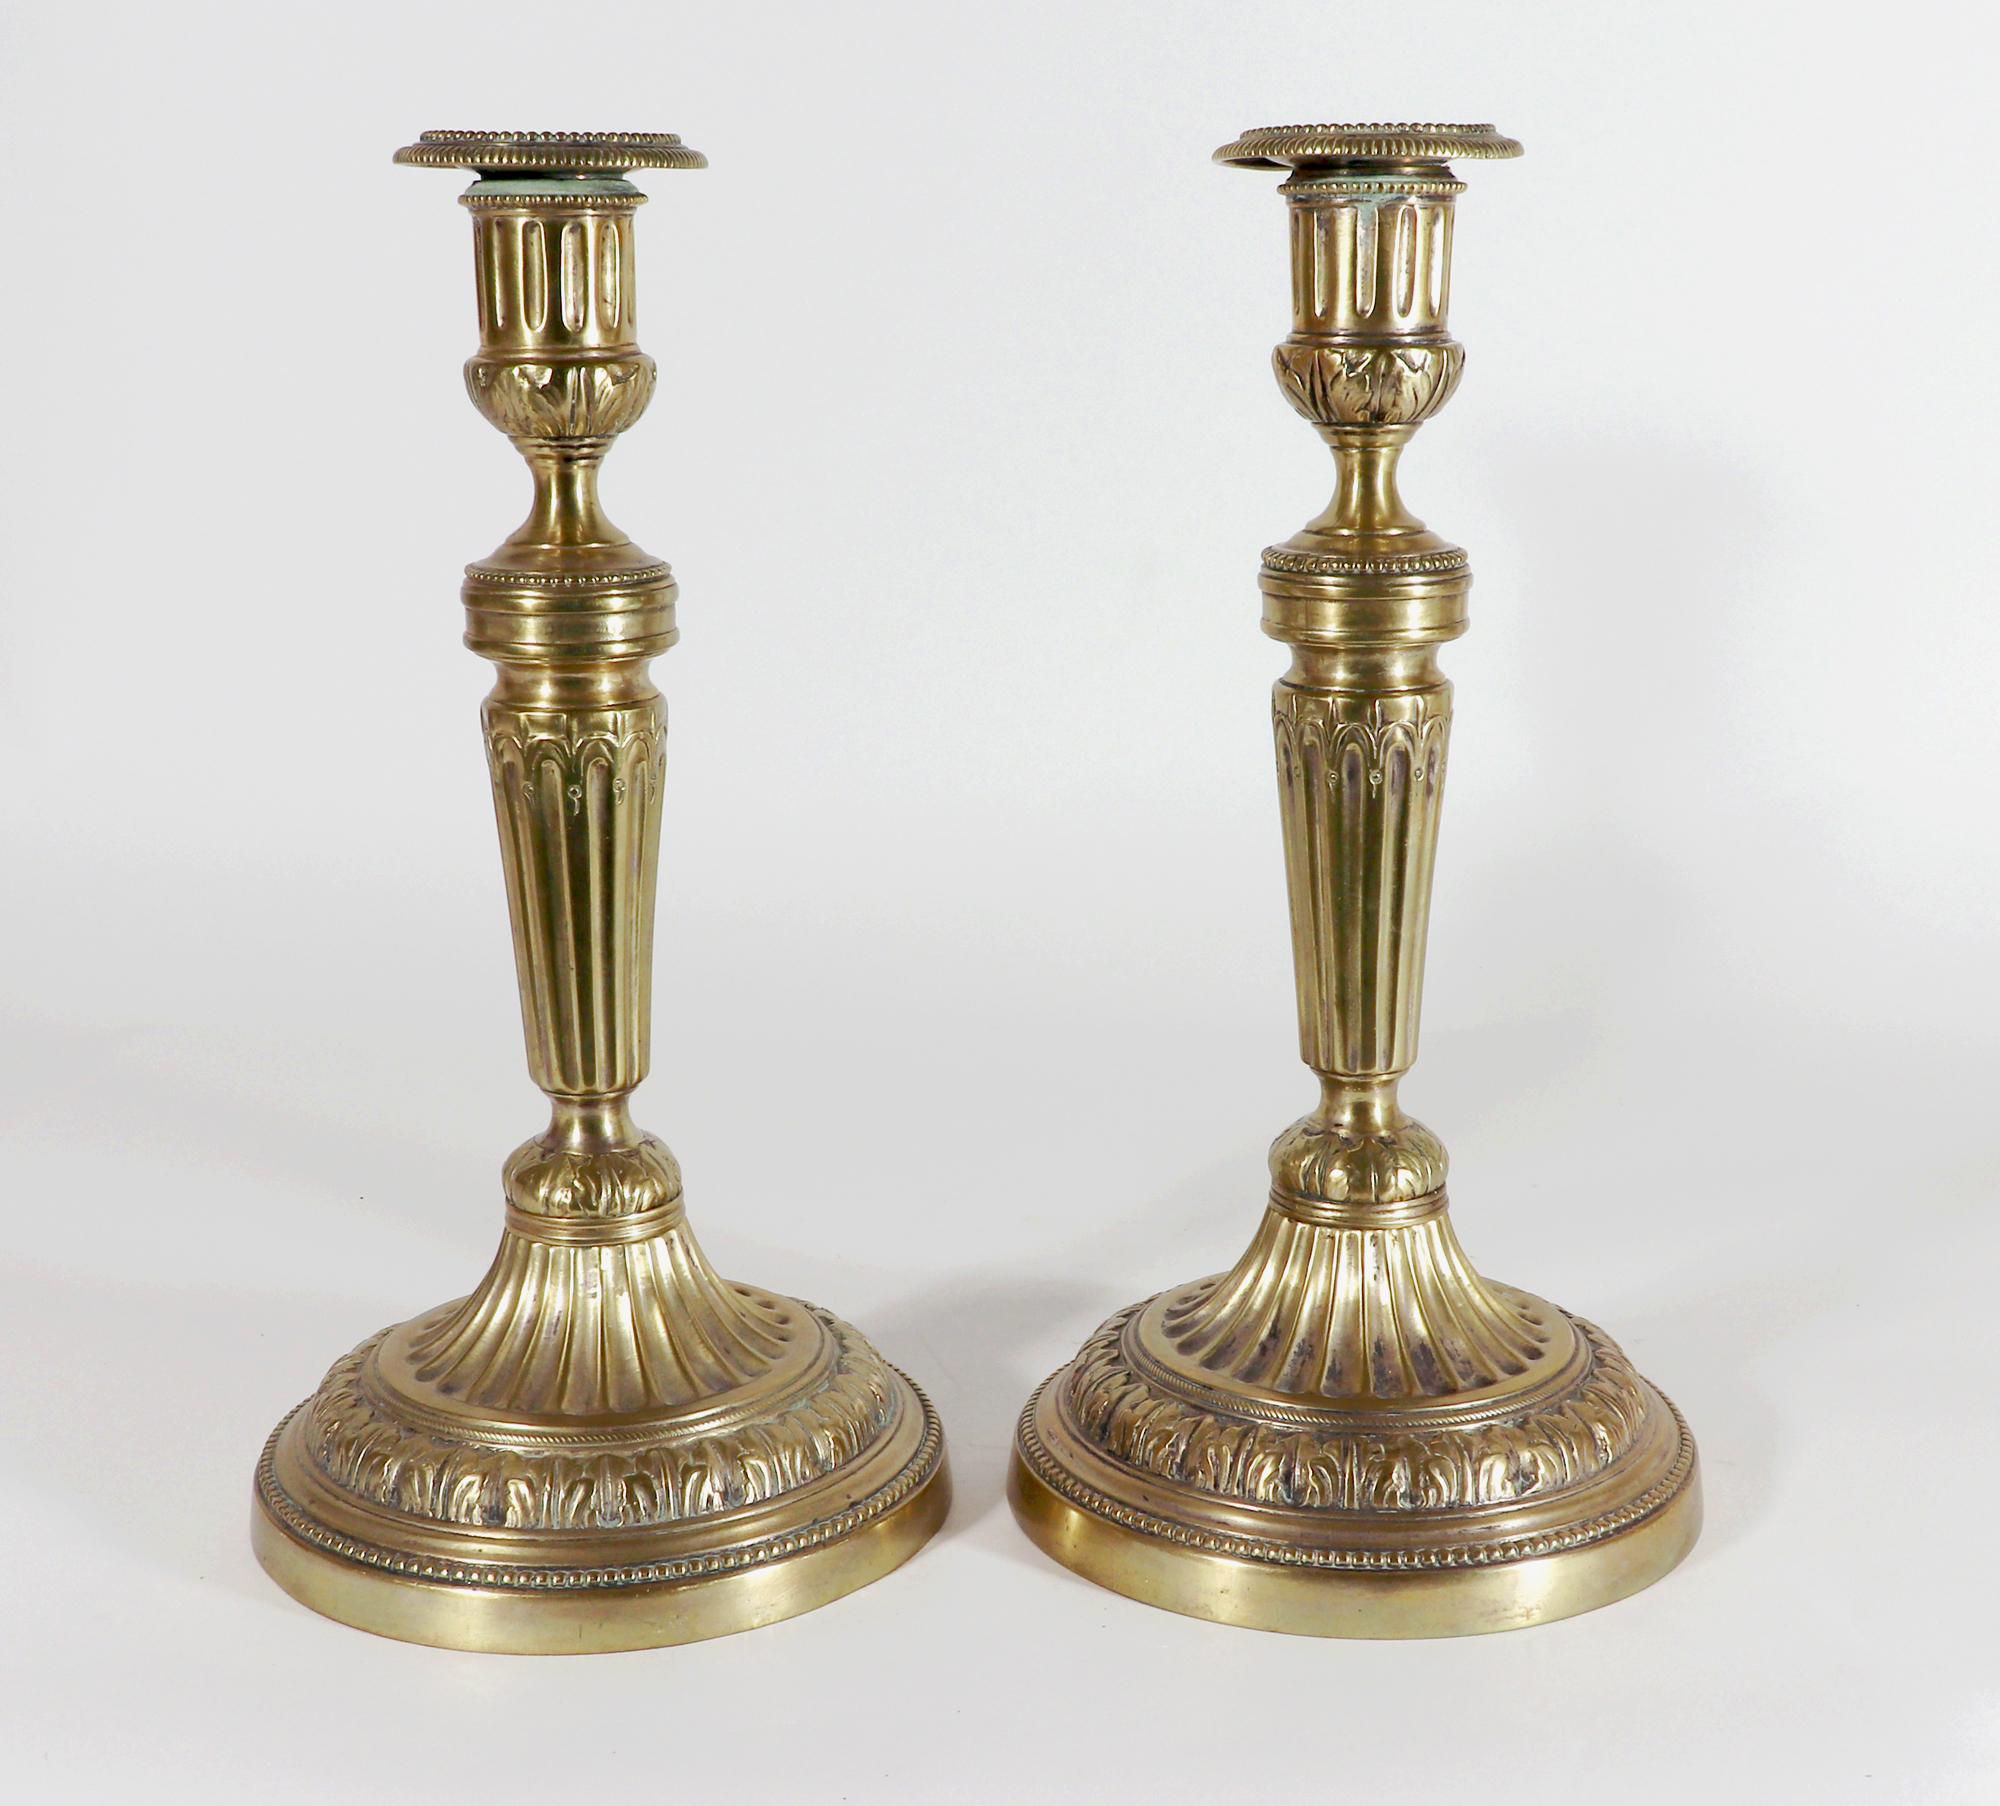 Stilvolle französische Kerzenständer aus Messing,
Um 1780

Die großen französischen Kerzenhalter aus Messing haben eine runde Form mit einem hohlen Sockel und einer kannelierten Säule.  Jeweils mit einer abnehmbaren Düse.  Die Kerzenständer haben